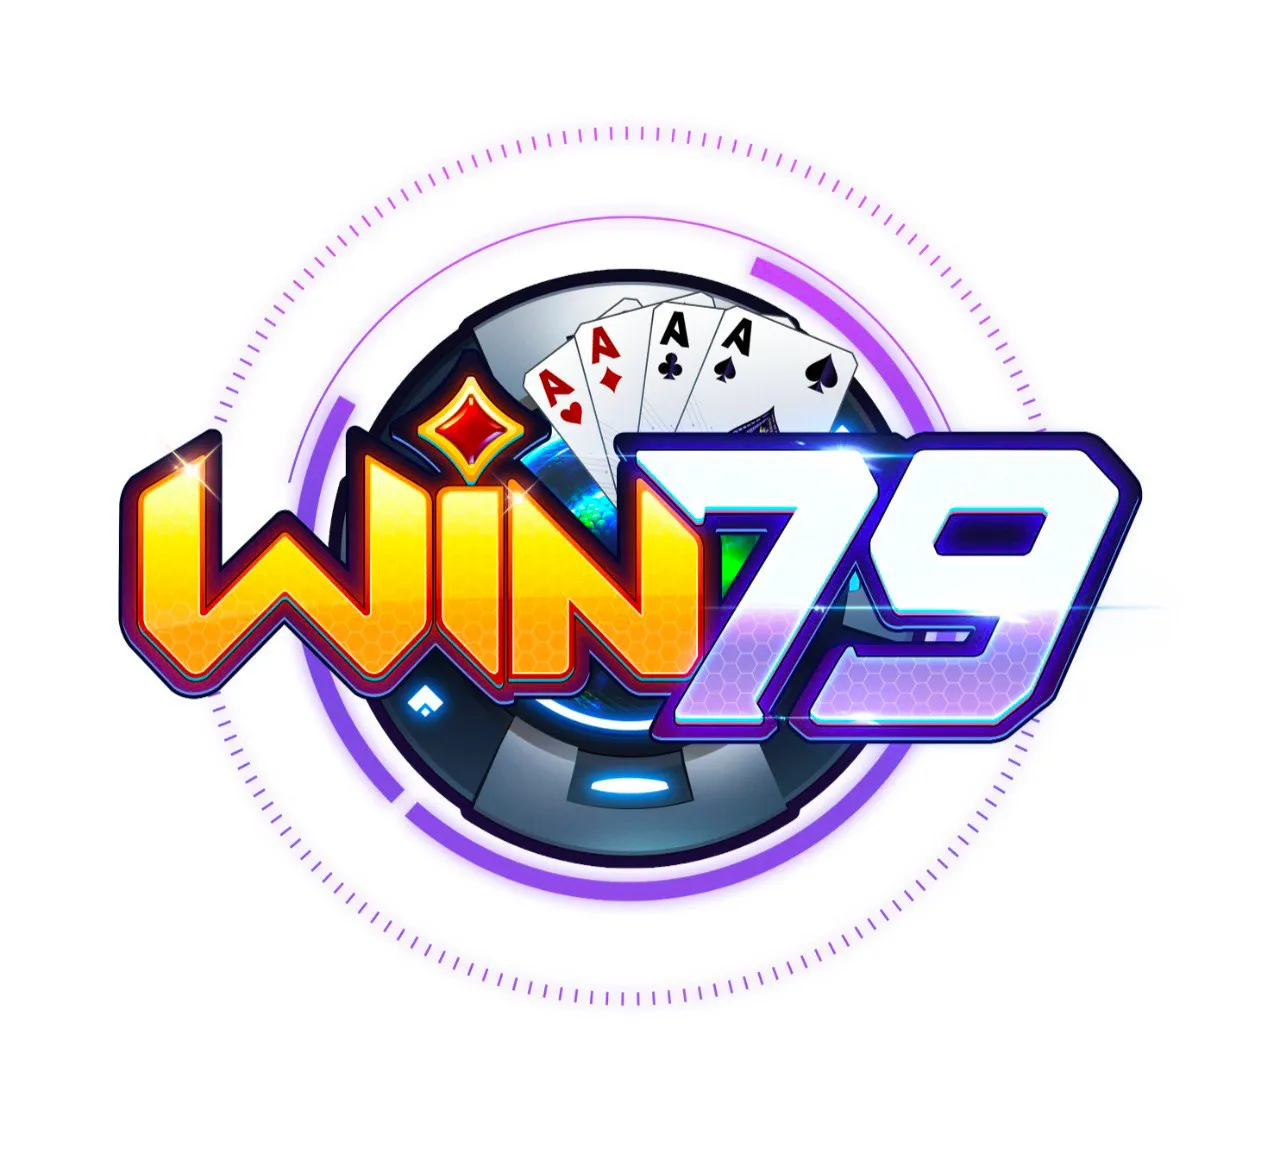 Hướng dẫn chơi game bài Mậu binh trên Win79